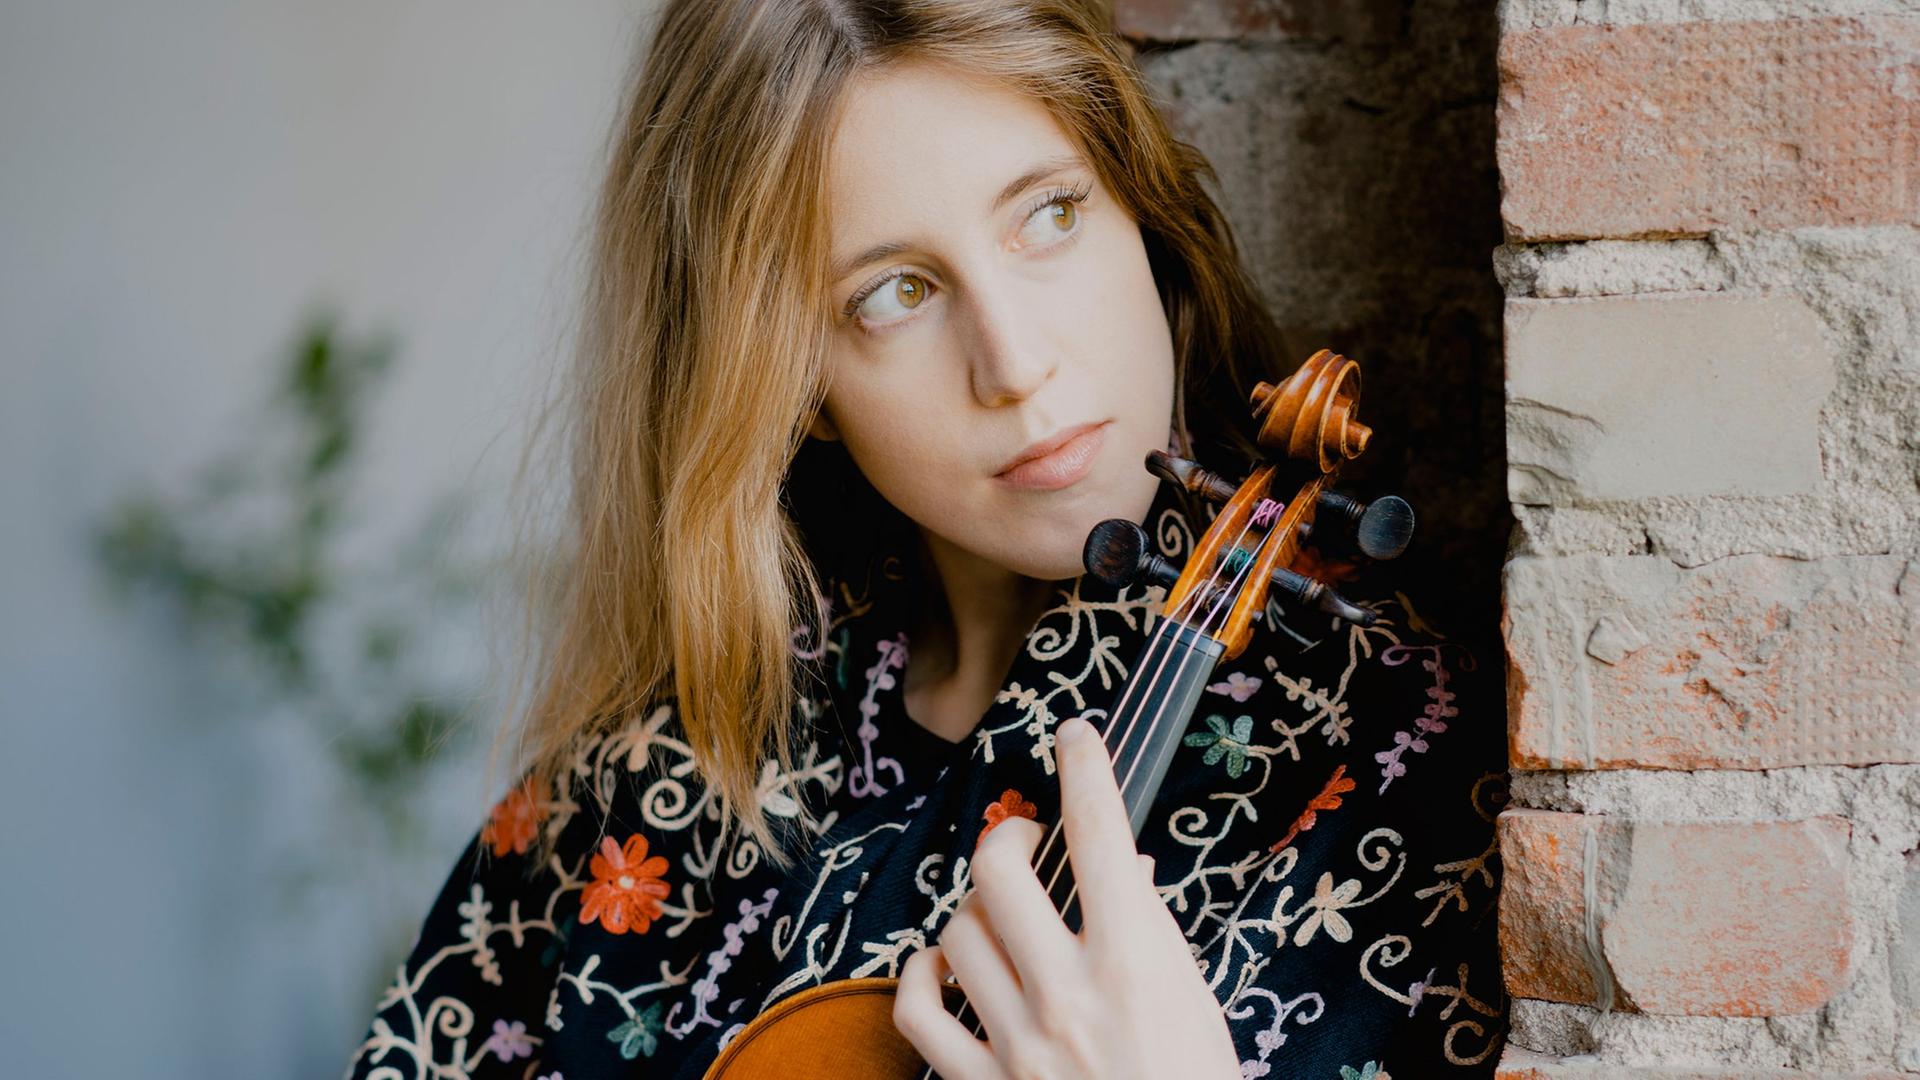 Vilde Frang steht mit einer Bluse voller Blumen nachdenklich an eine Ziegelmauer gelehnt, während sie ihre Geige umschließt.